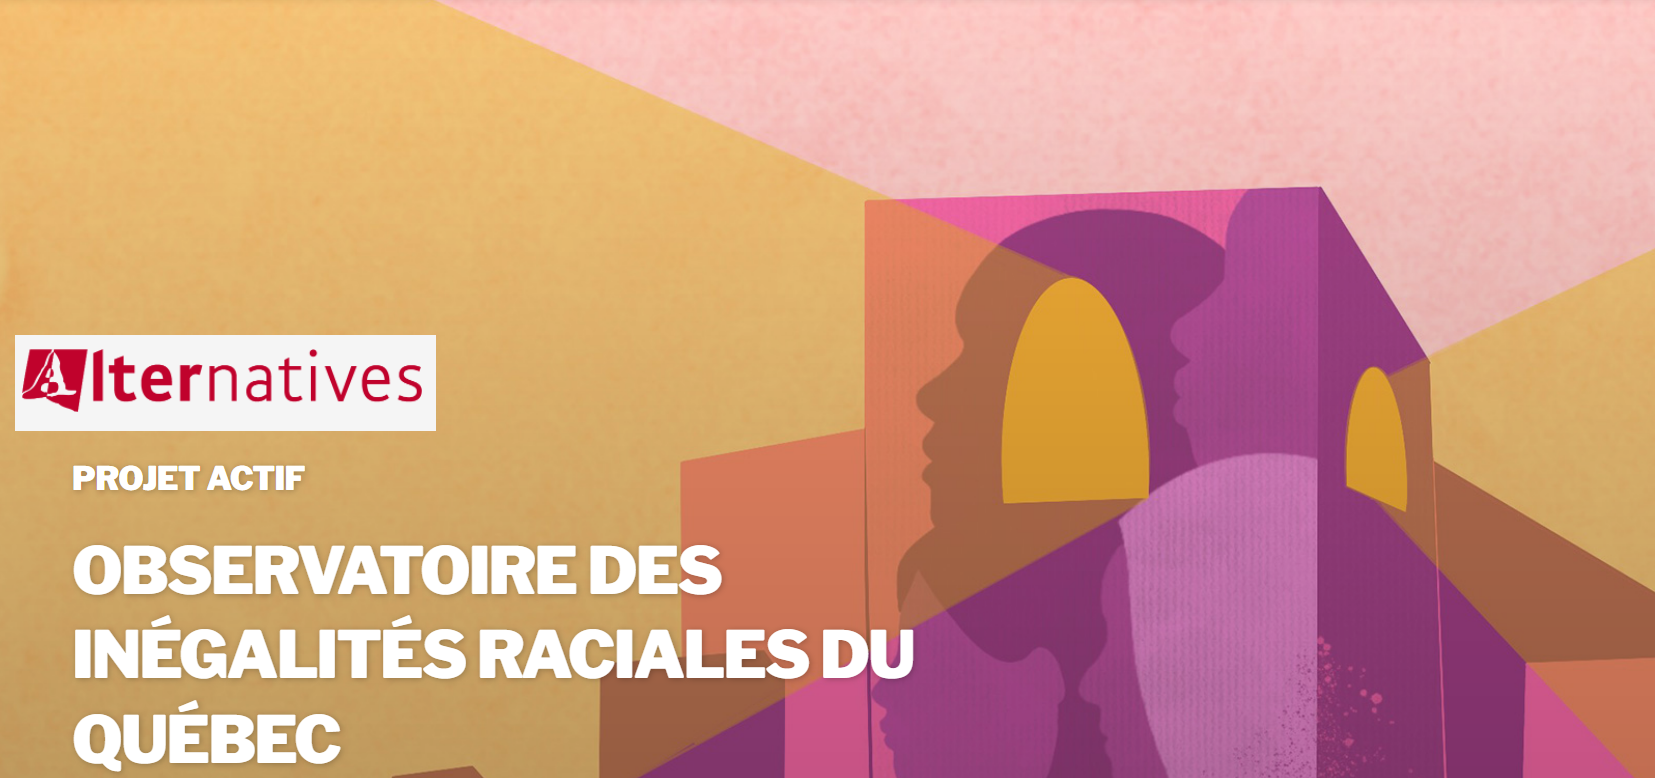 Questionnaire sur l’expérience et la perception des discriminations raciales en emploi au Québec